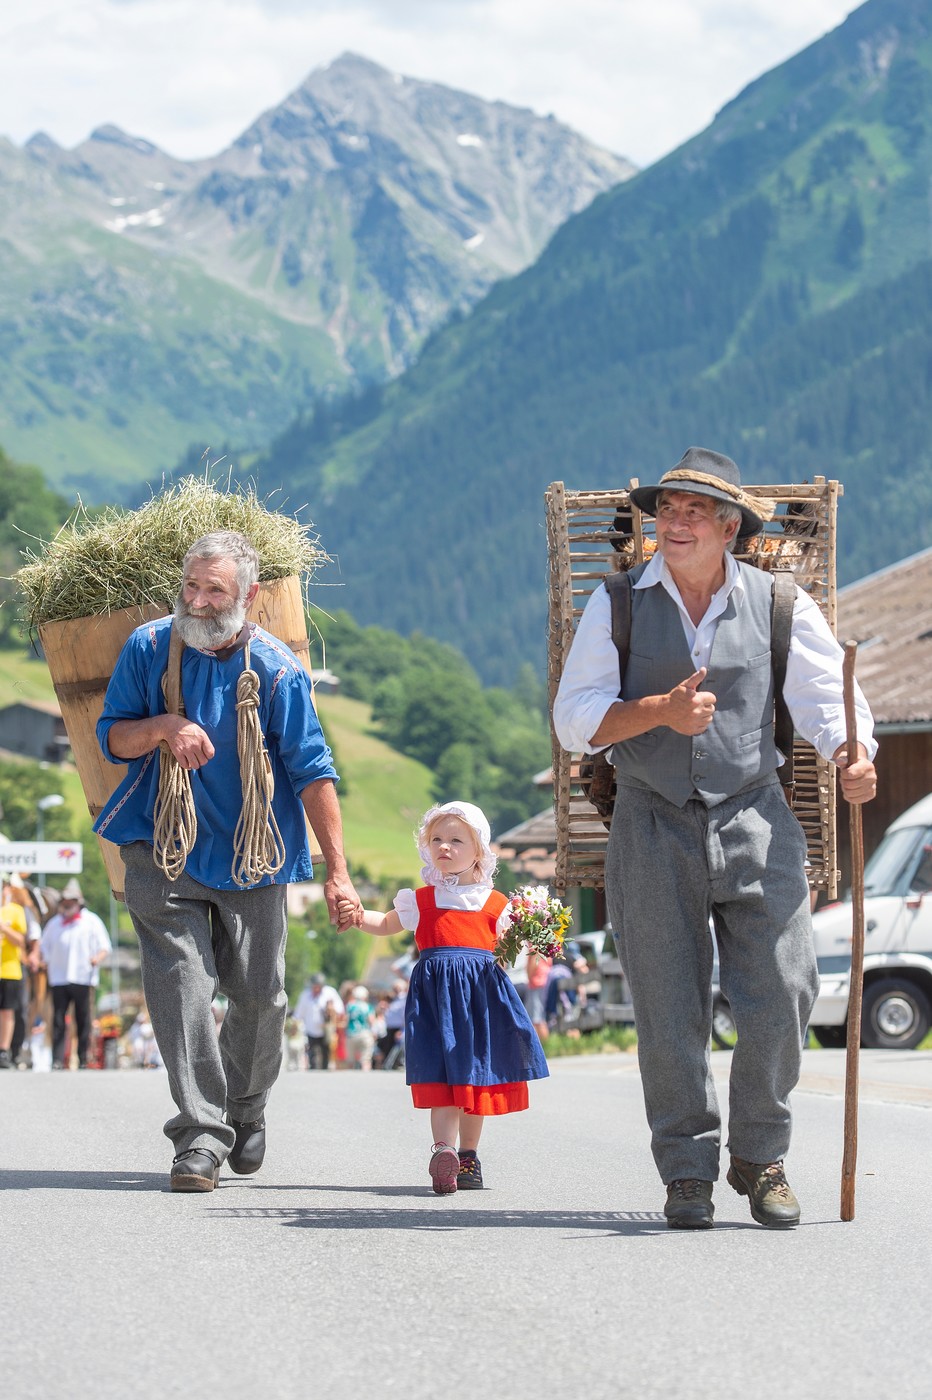 Eine Gemeinde jubiliert: Über mehrere Monate und diverse Veranstaltungen hinweg feiert Klosters sein 800 jähriges Bestehen.